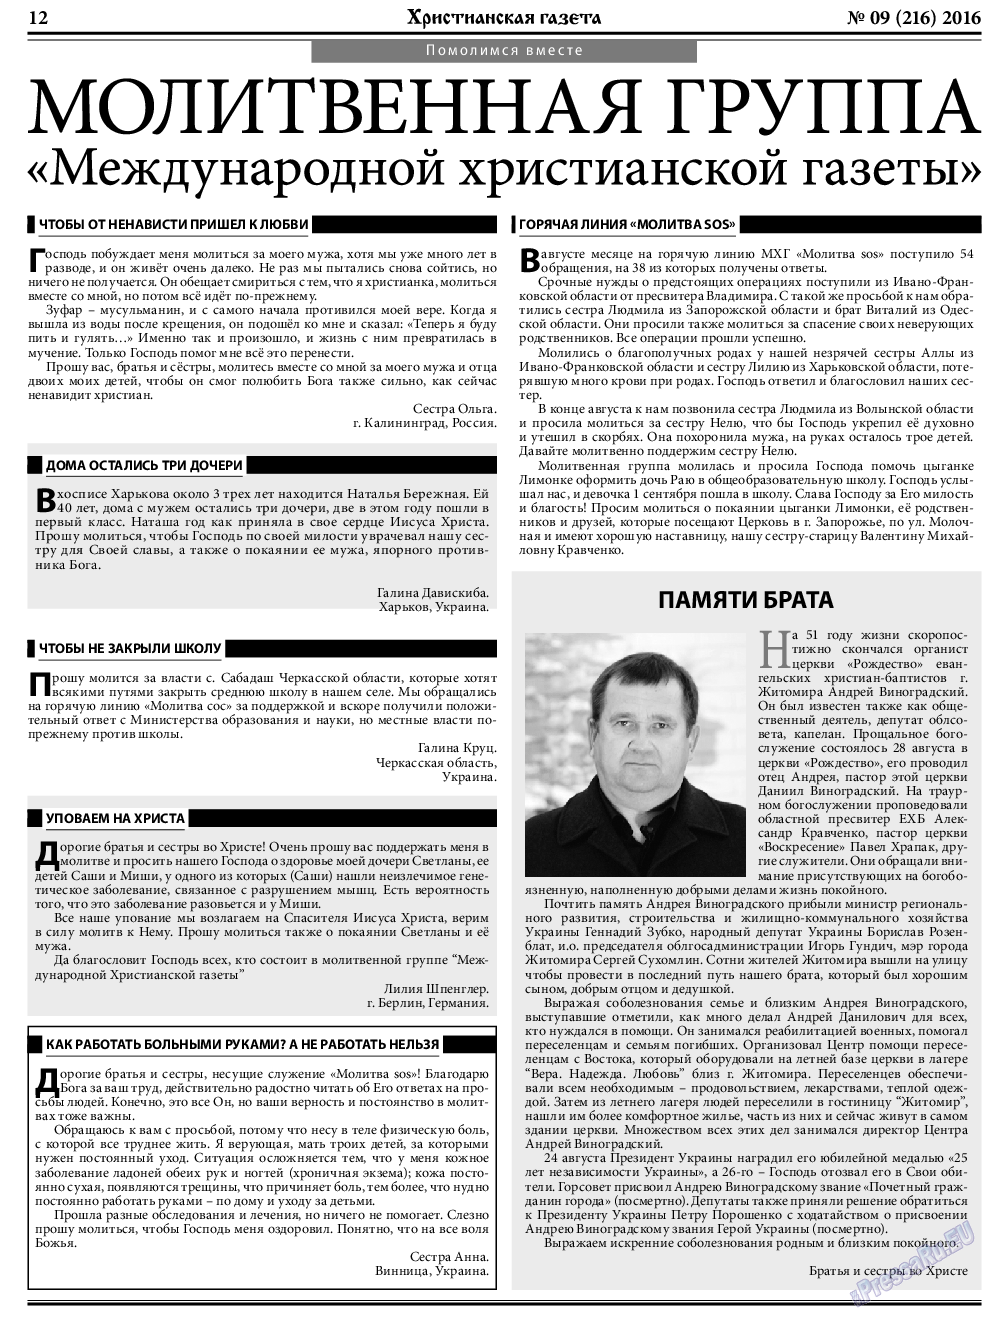 Христианская газета, газета. 2016 №9 стр.12